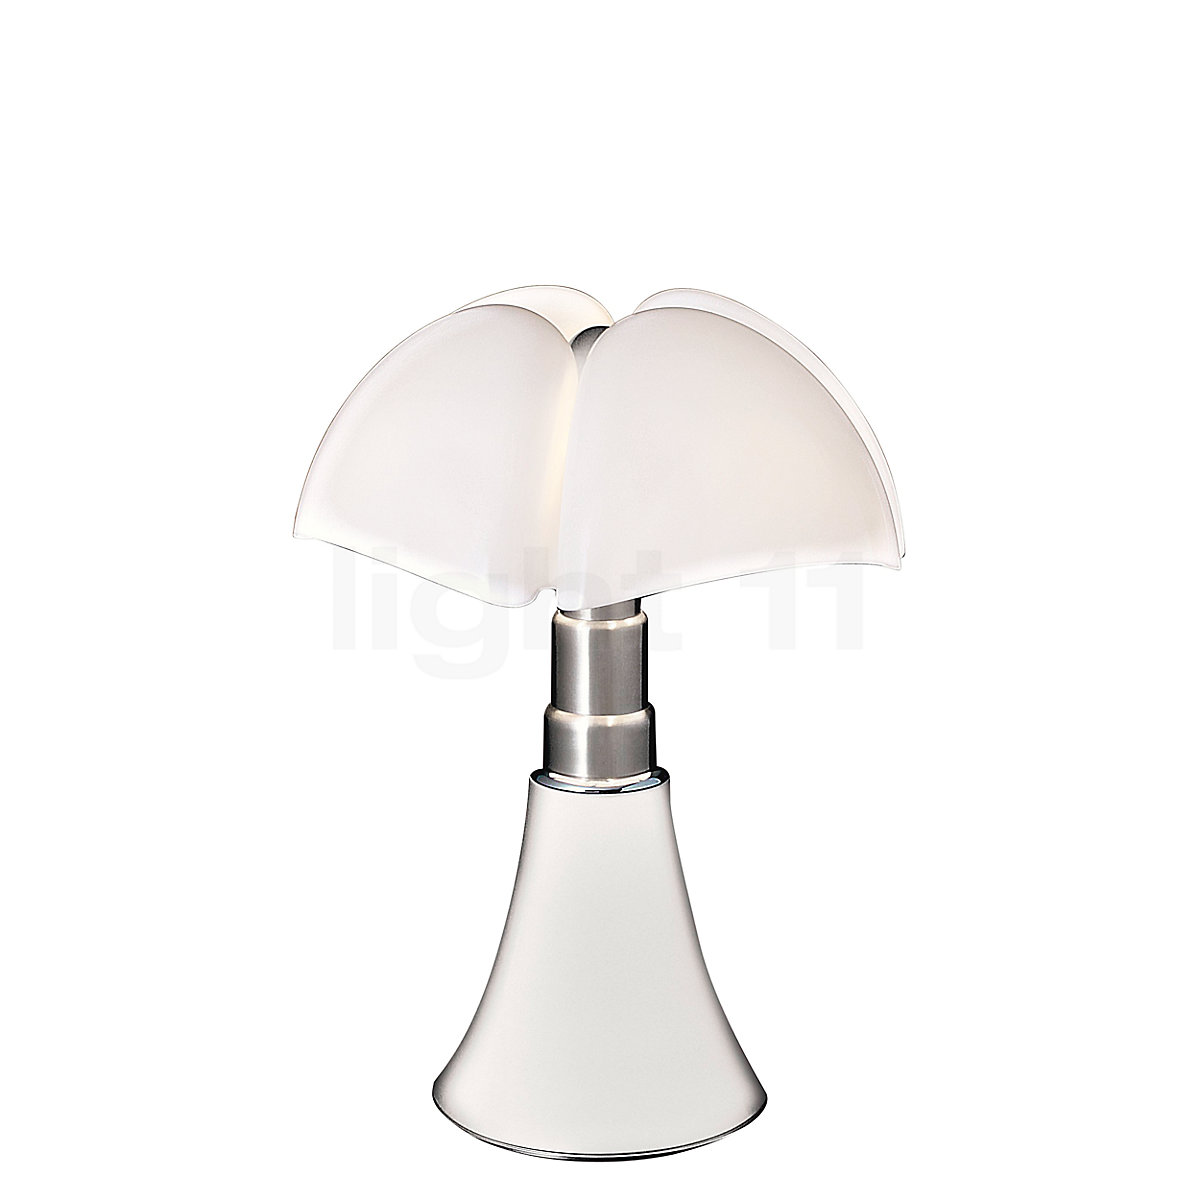 Martinelli Luce Pipistrello Table Lamp light11.eu